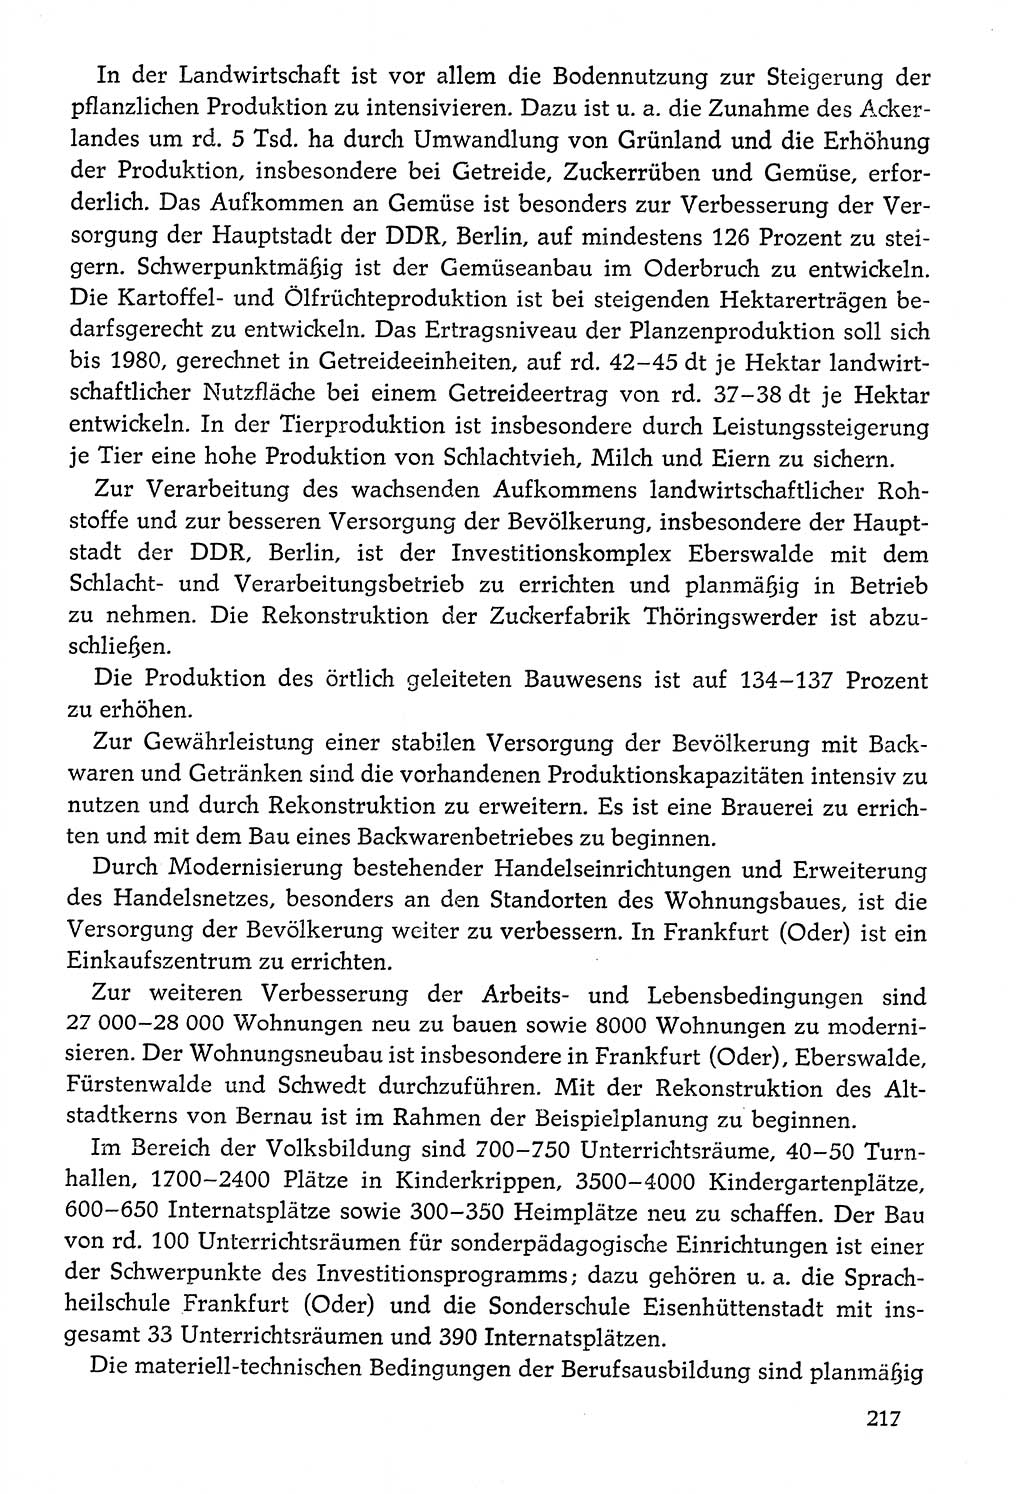 Dokumente der Sozialistischen Einheitspartei Deutschlands (SED) [Deutsche Demokratische Republik (DDR)] 1976-1977, Seite 217 (Dok. SED DDR 1976-1977, S. 217)